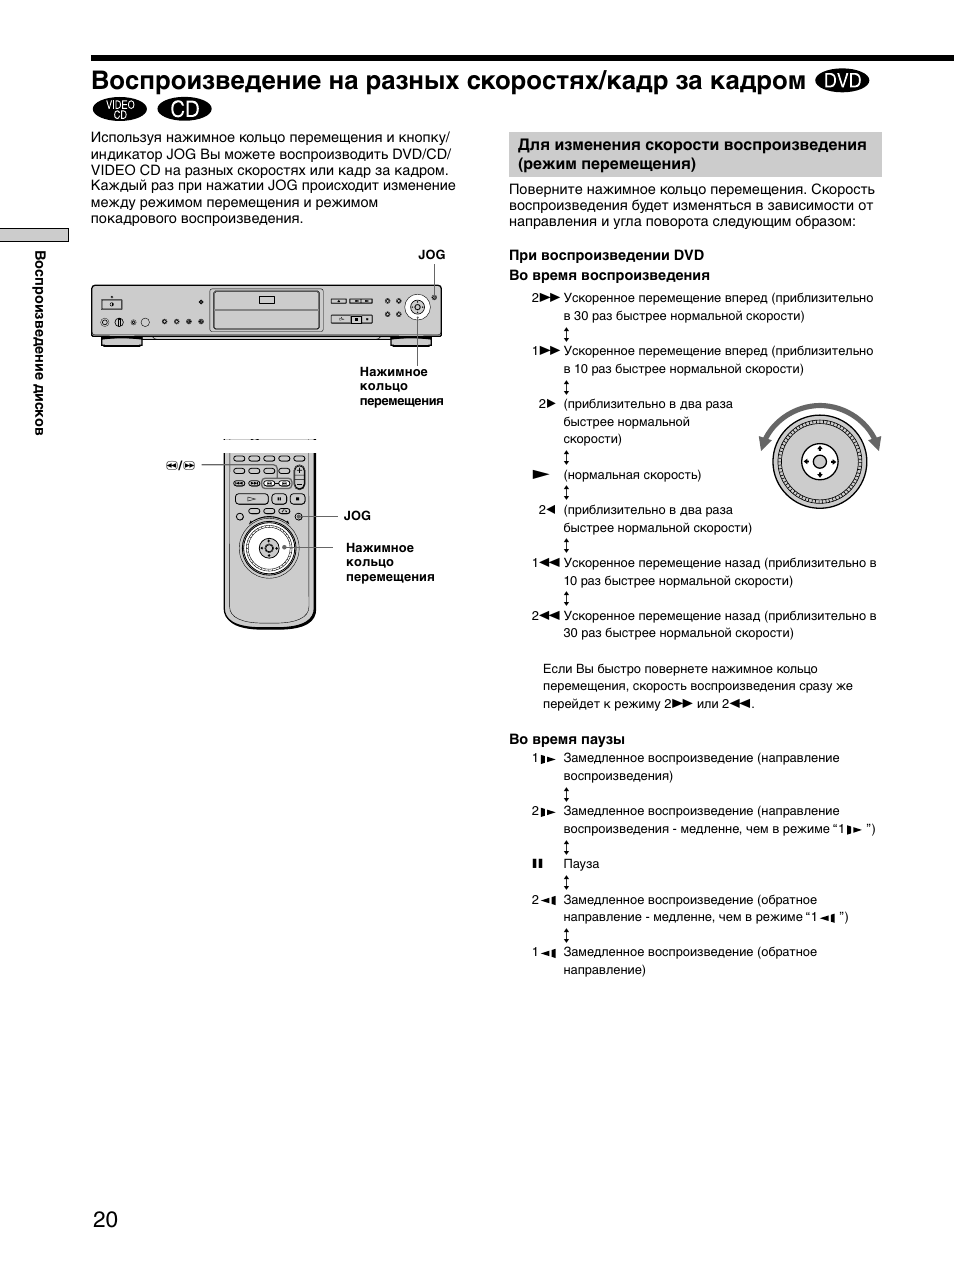 Воспроизведение на разных скоростях/кадр за кадром | Инструкция по эксплуатации Sony DVP-S735D | Страница 20 / 84